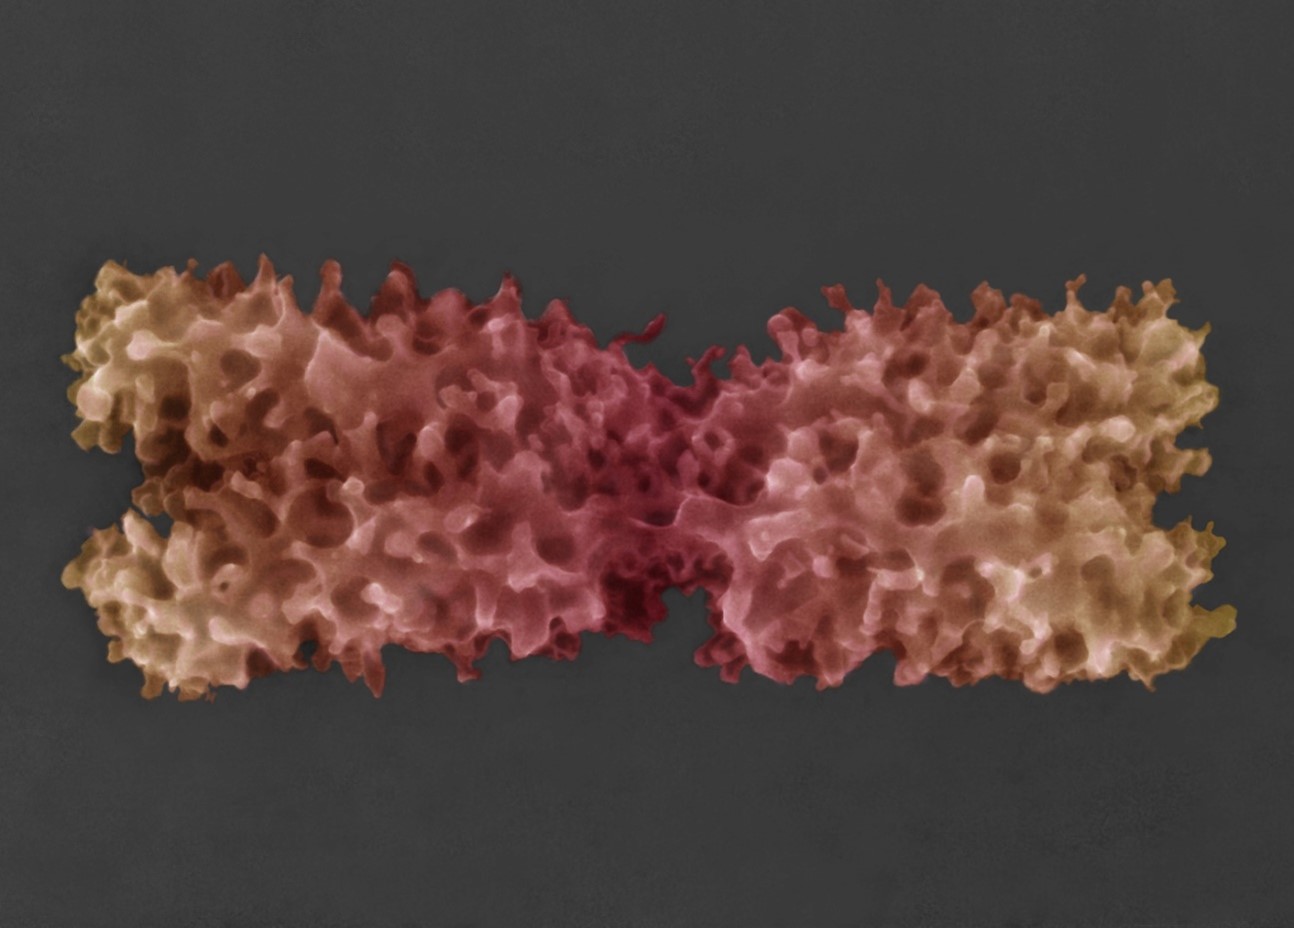 Kolorovaný snímek chromozomu v nativním stavu získané pomocí nově vyvinuté pokročilé environmentální rastrovací elektronová mikroskopie